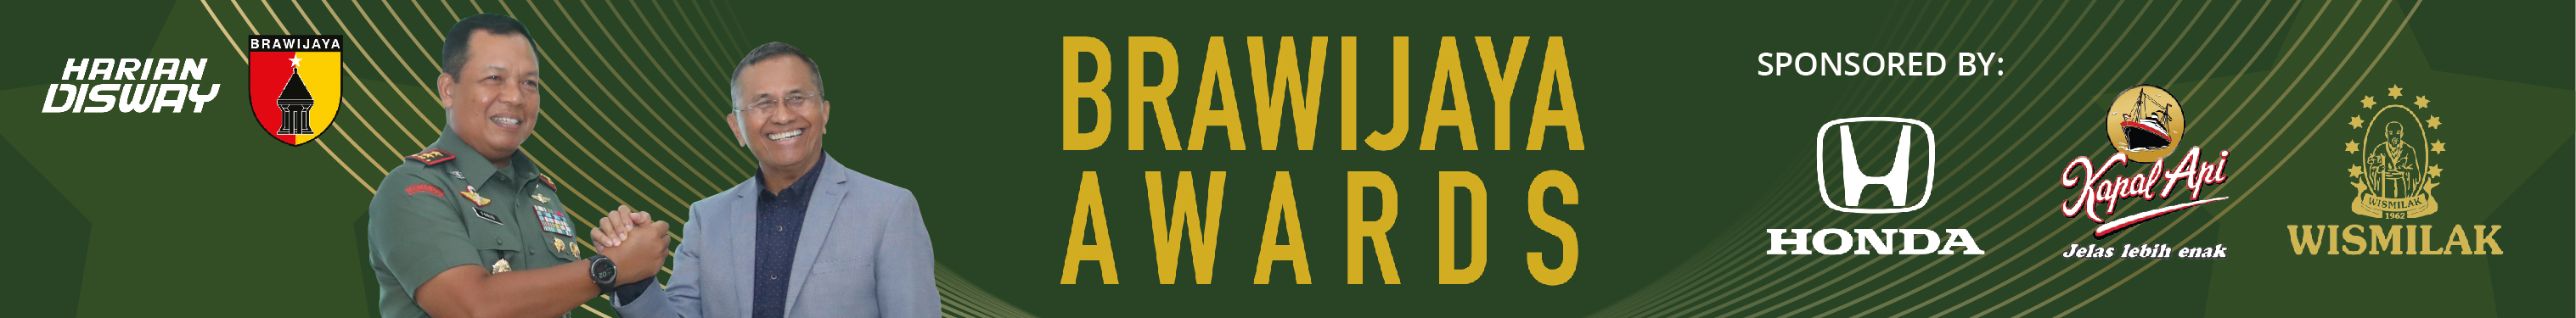 brawijaya award